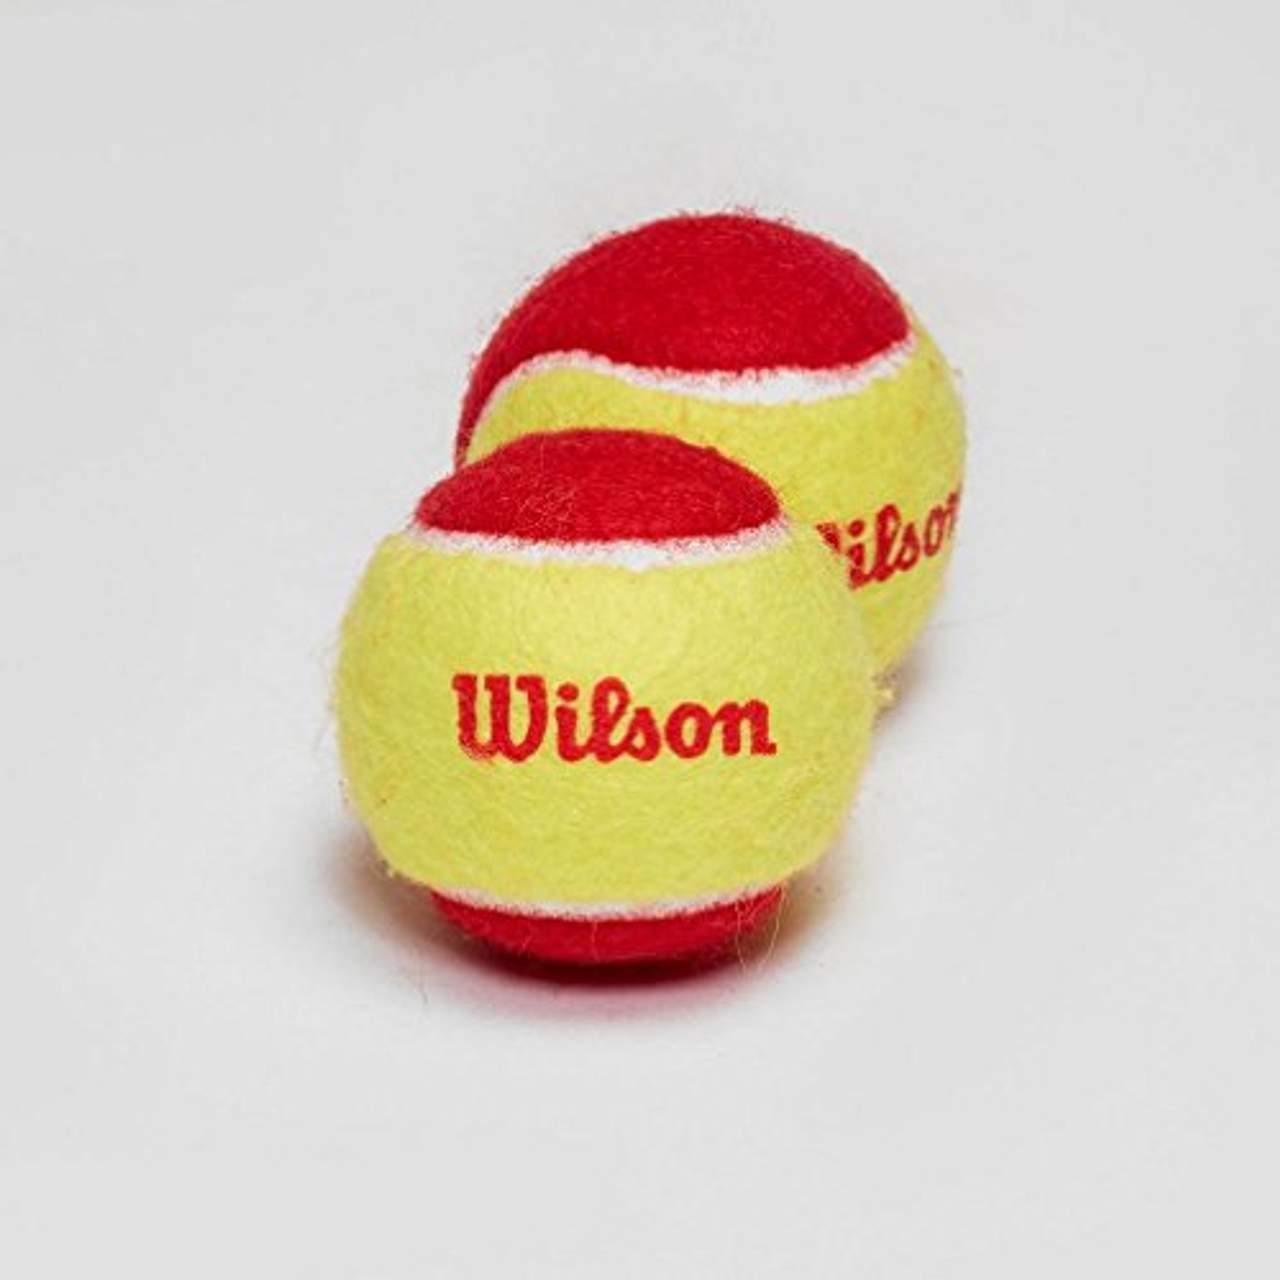 Wilson Tennisbälle Starter Red